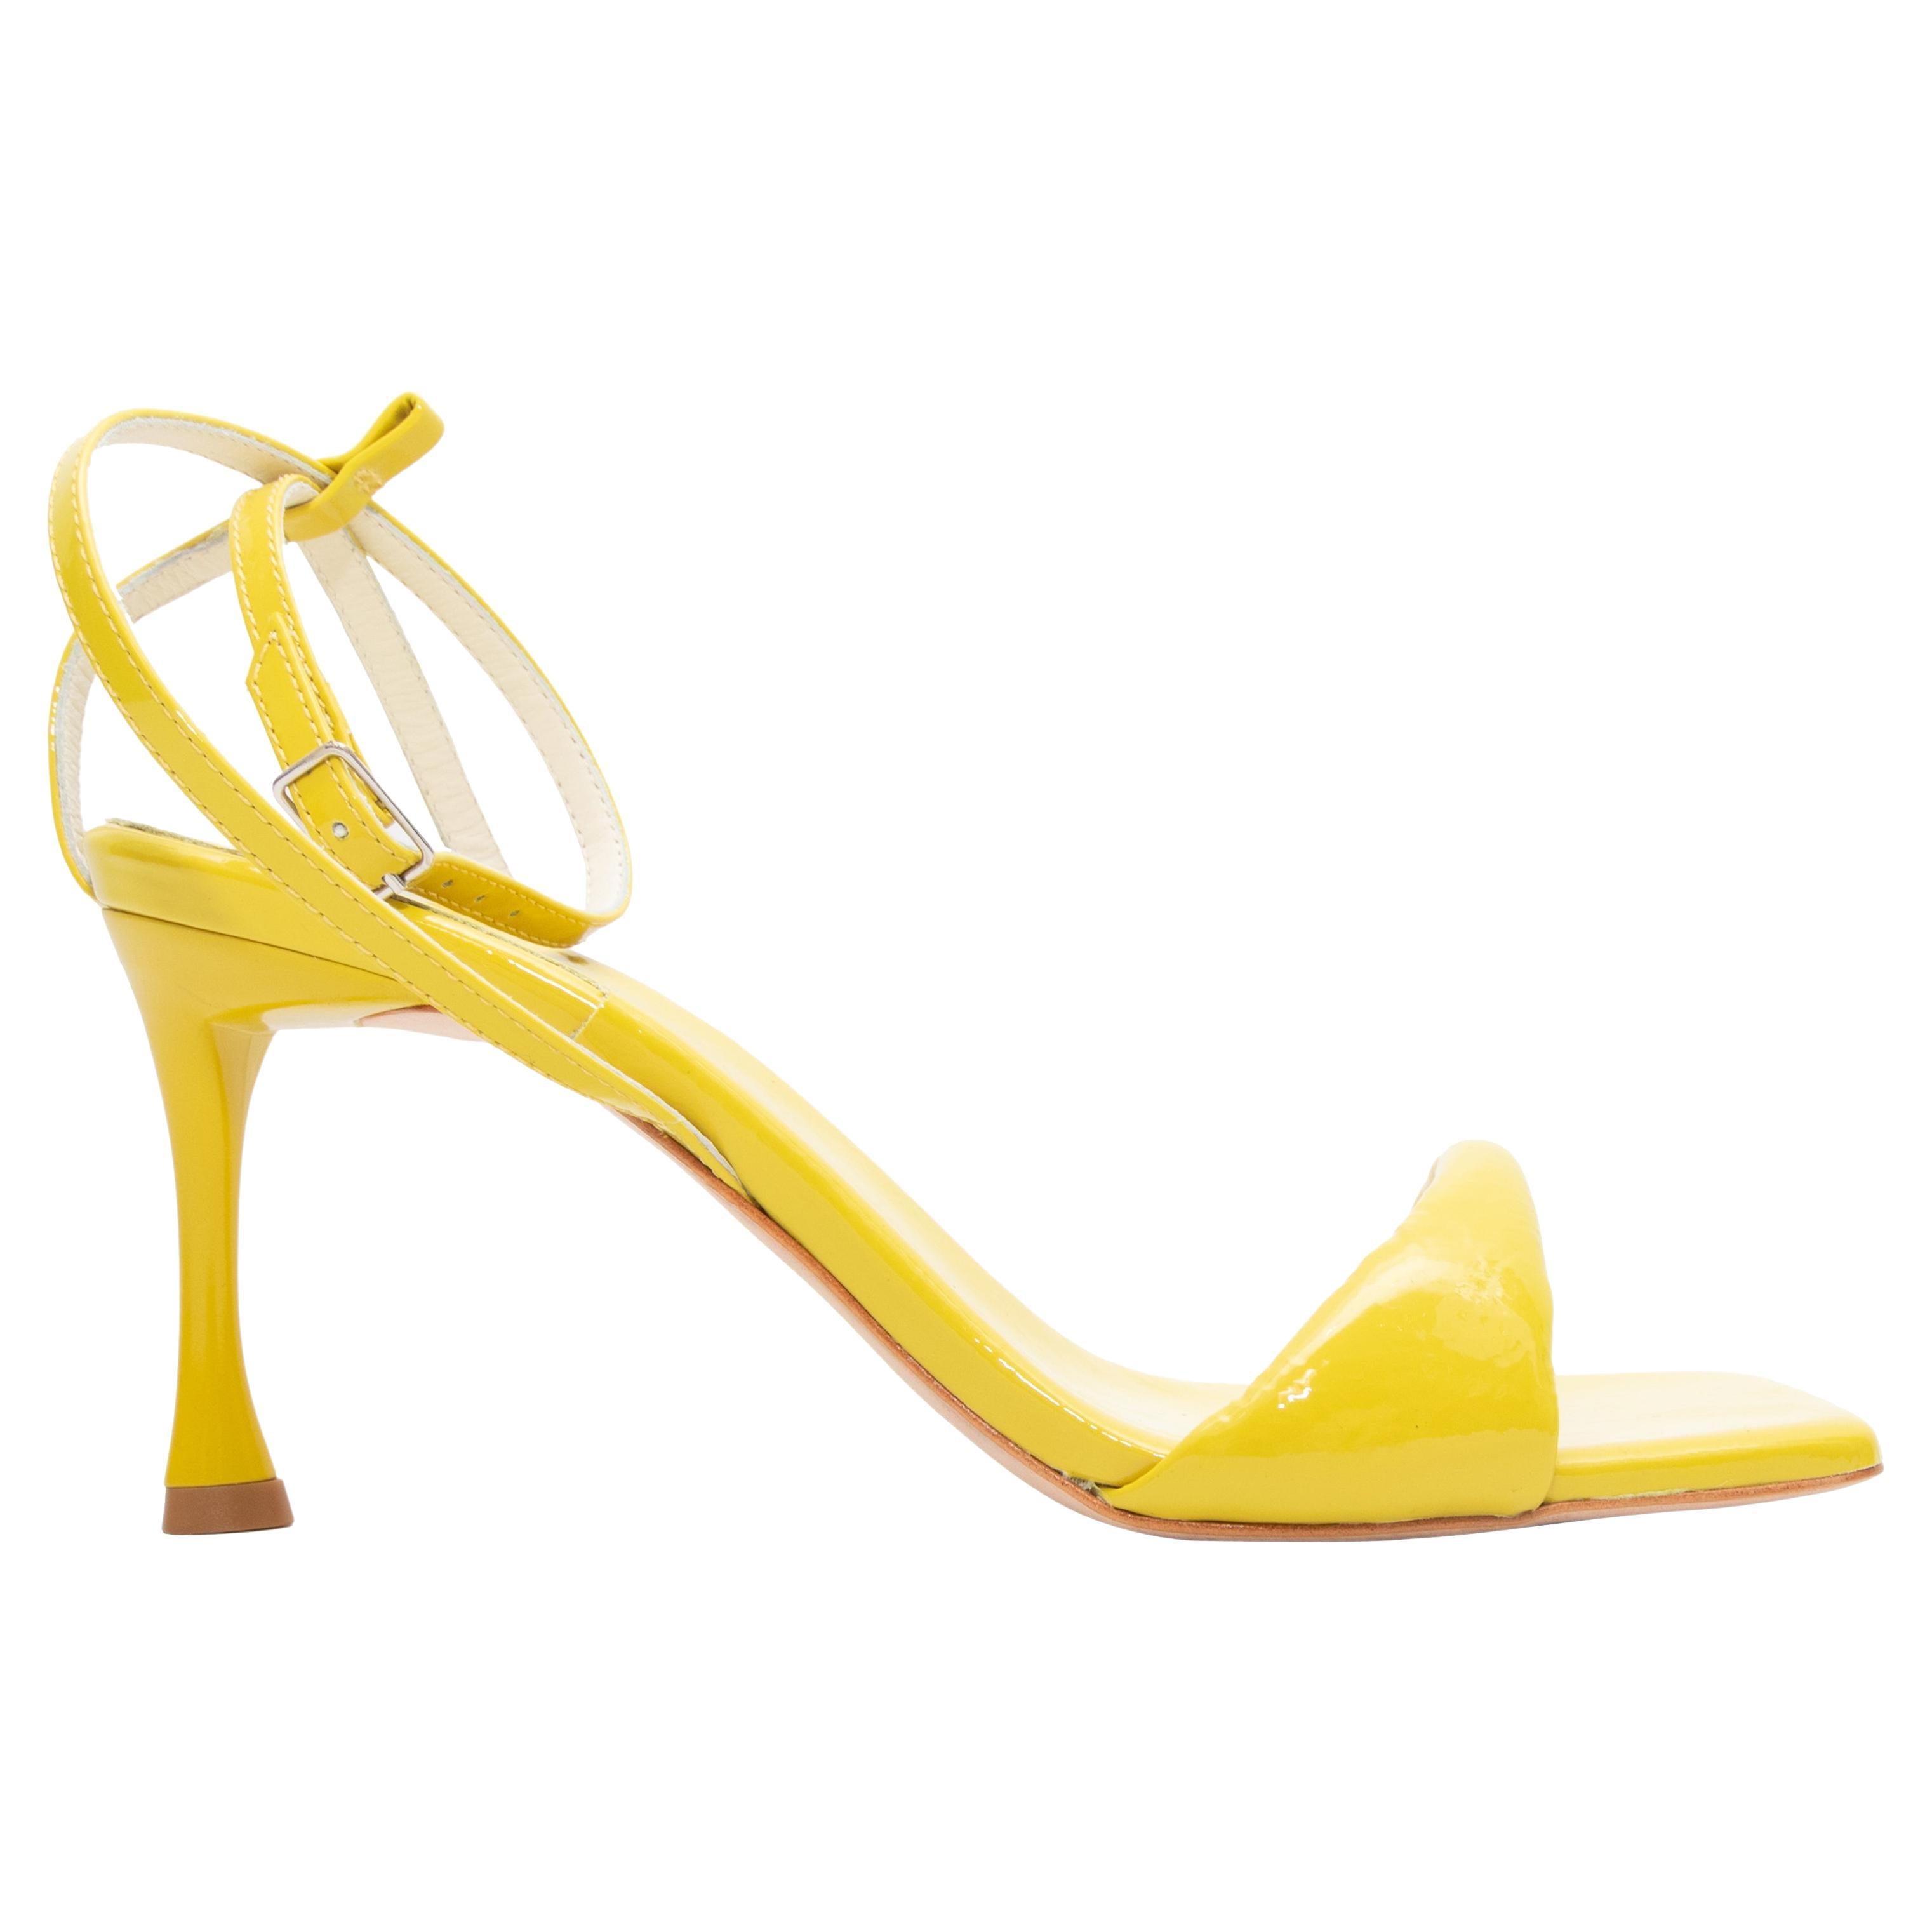 Danika-01 | Shoes | Light Yellow Heels Size 7 | Poshmark